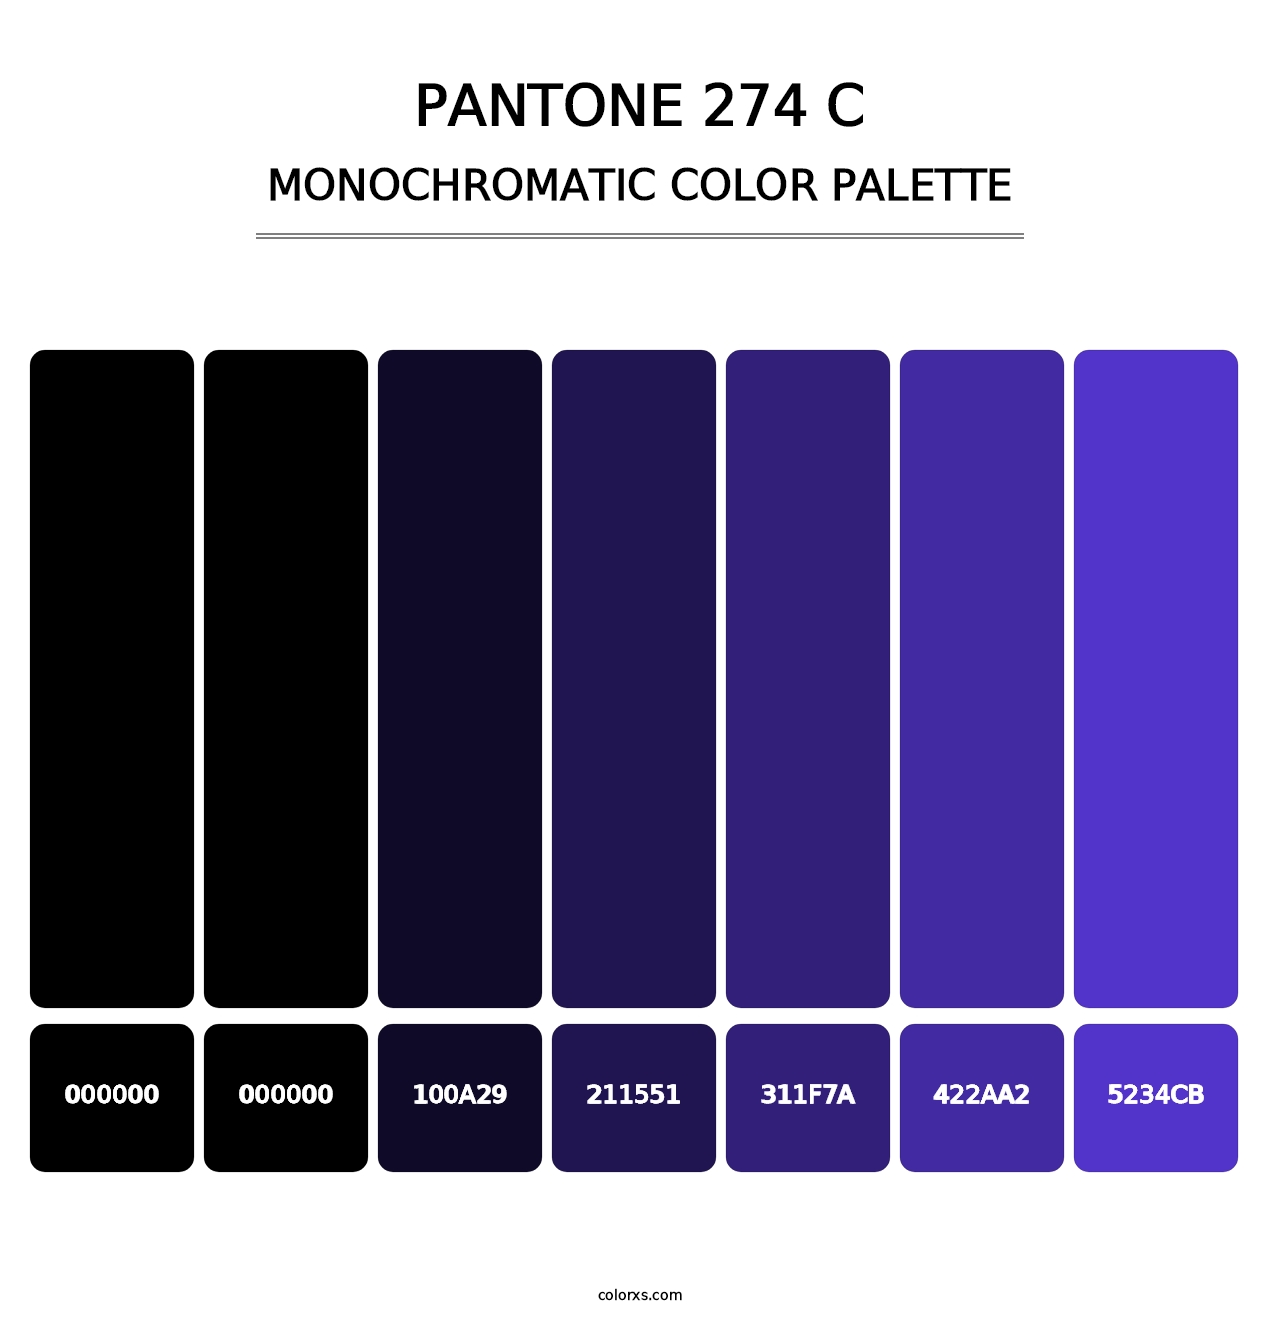 PANTONE 274 C - Monochromatic Color Palette